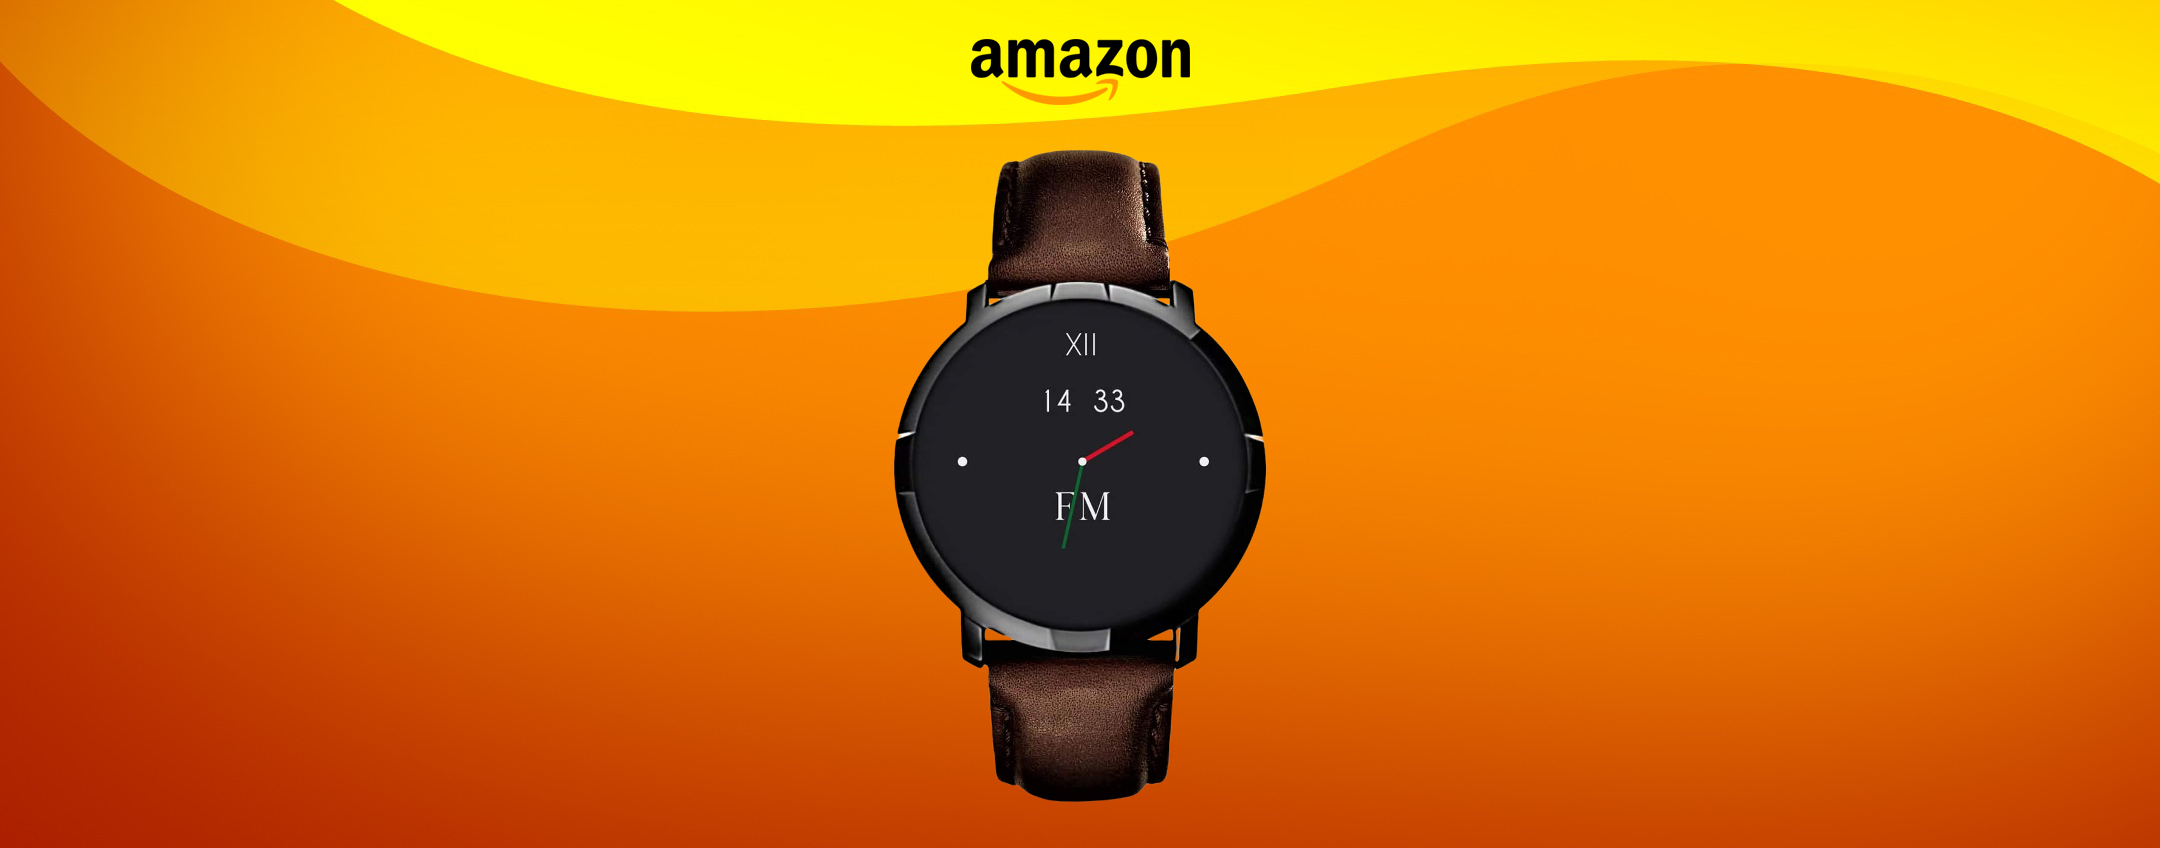 Smartwatch con design italiano: LUSSO al polso a prezzo top (47€)